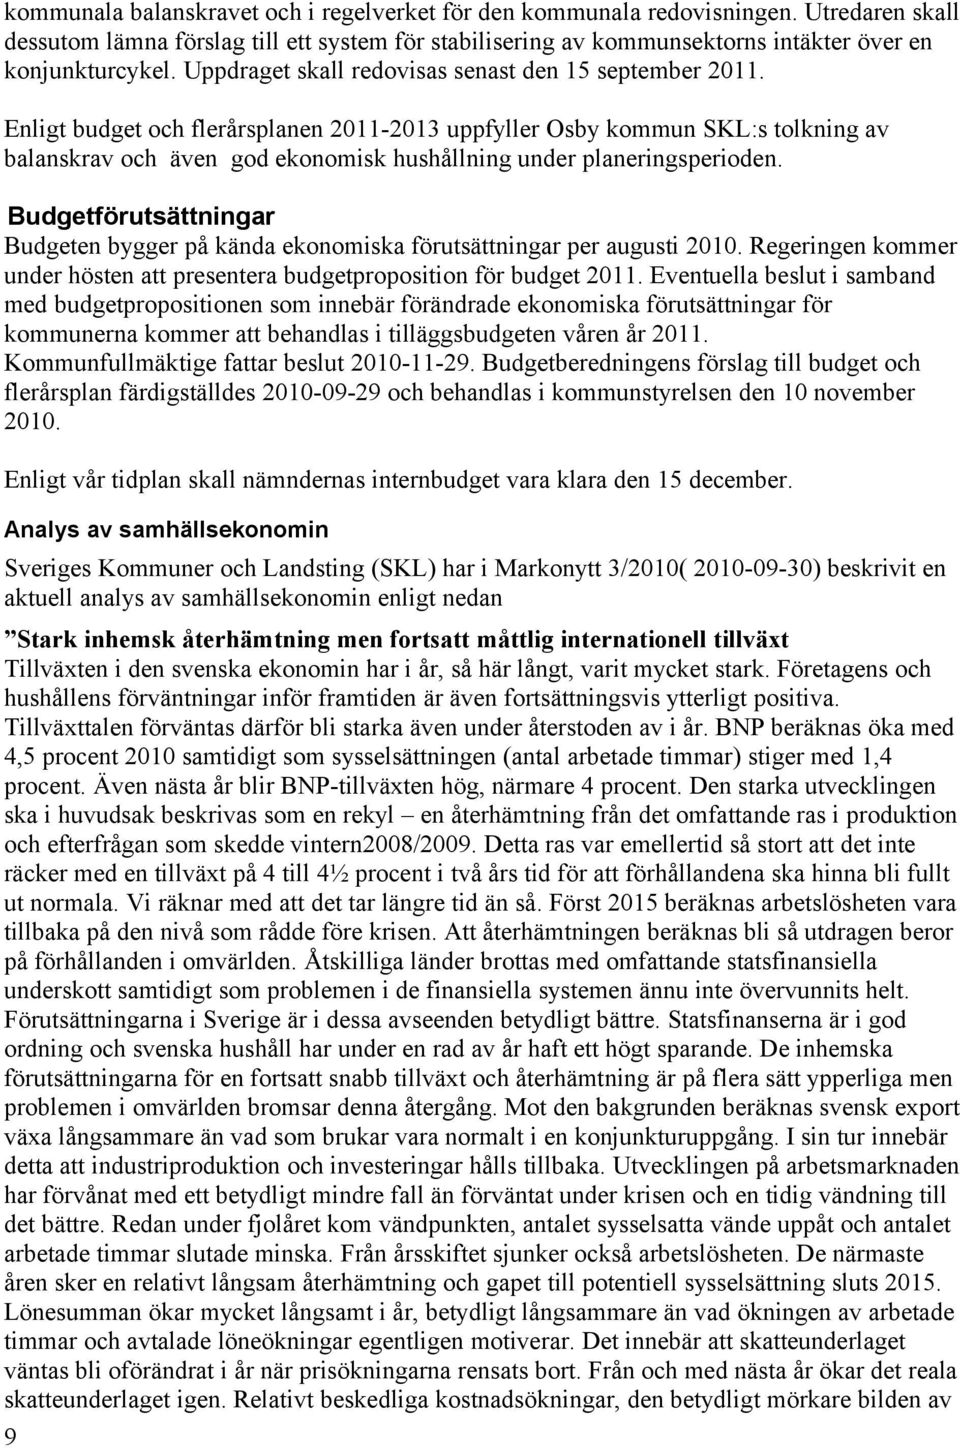 Enligt budget och flerårsplanen 2011-2013 uppfyller Osby kommun SKL:s tolkning av balanskrav och även god ekonomisk hushållning under planeringsperioden.